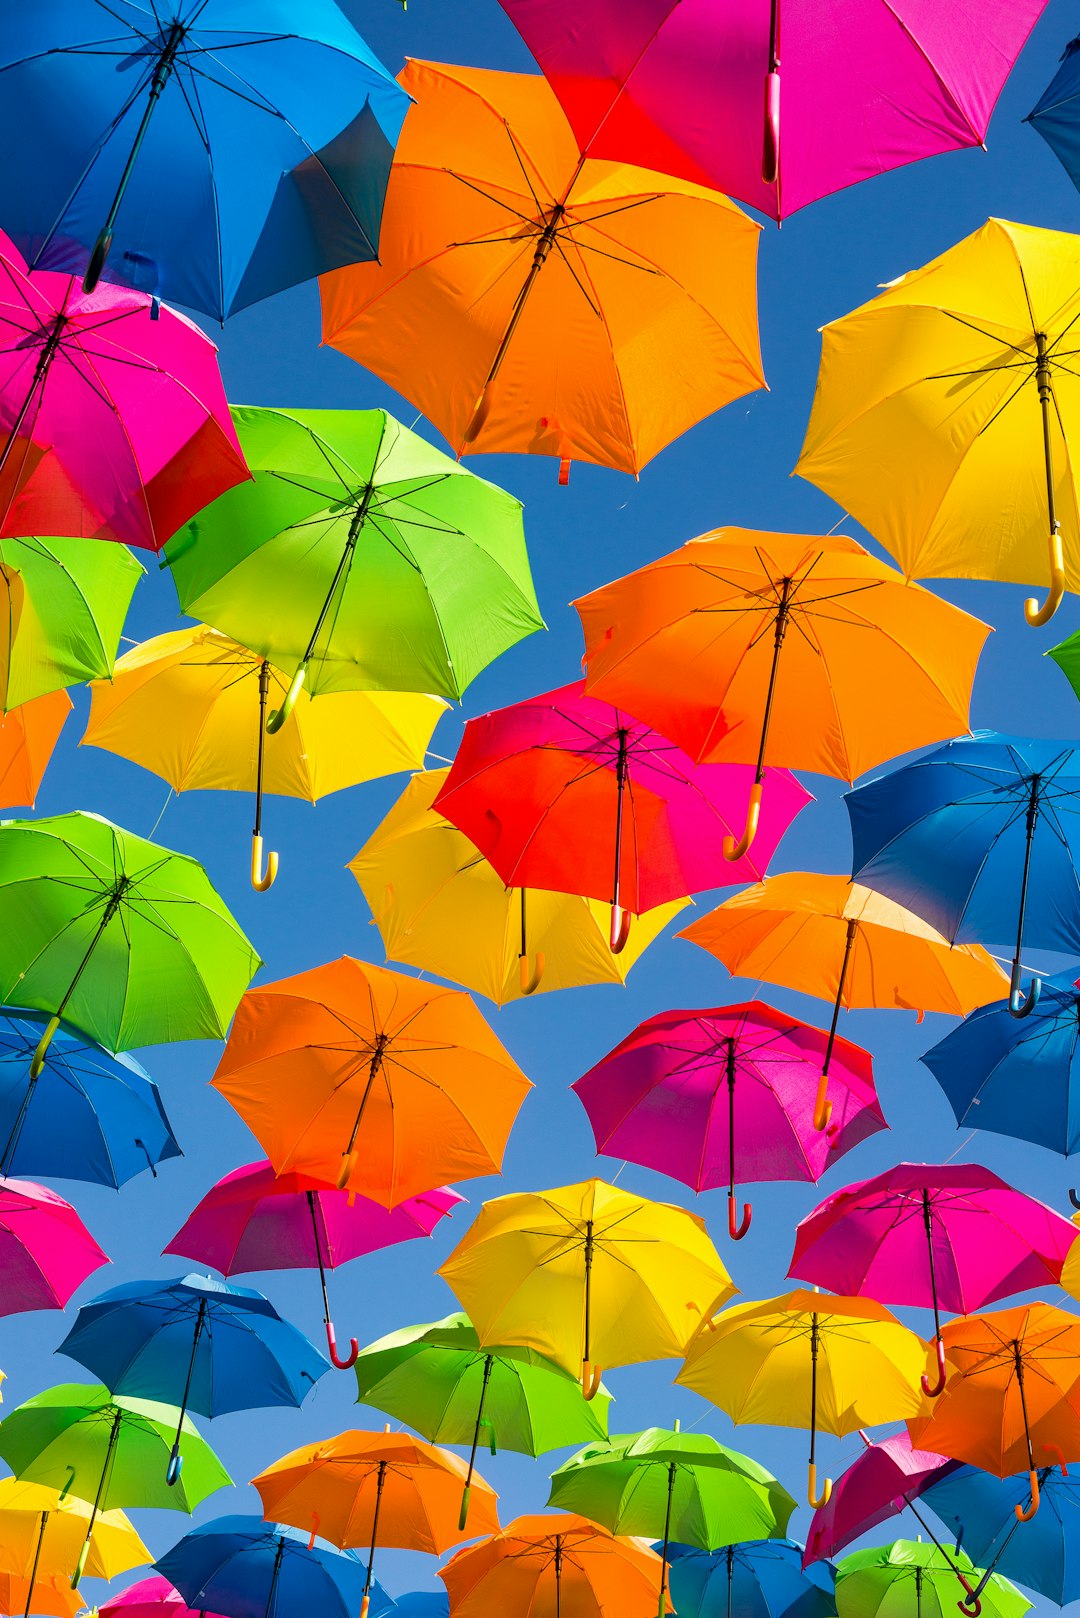 Définition de ombrelle | Dictionnaire français